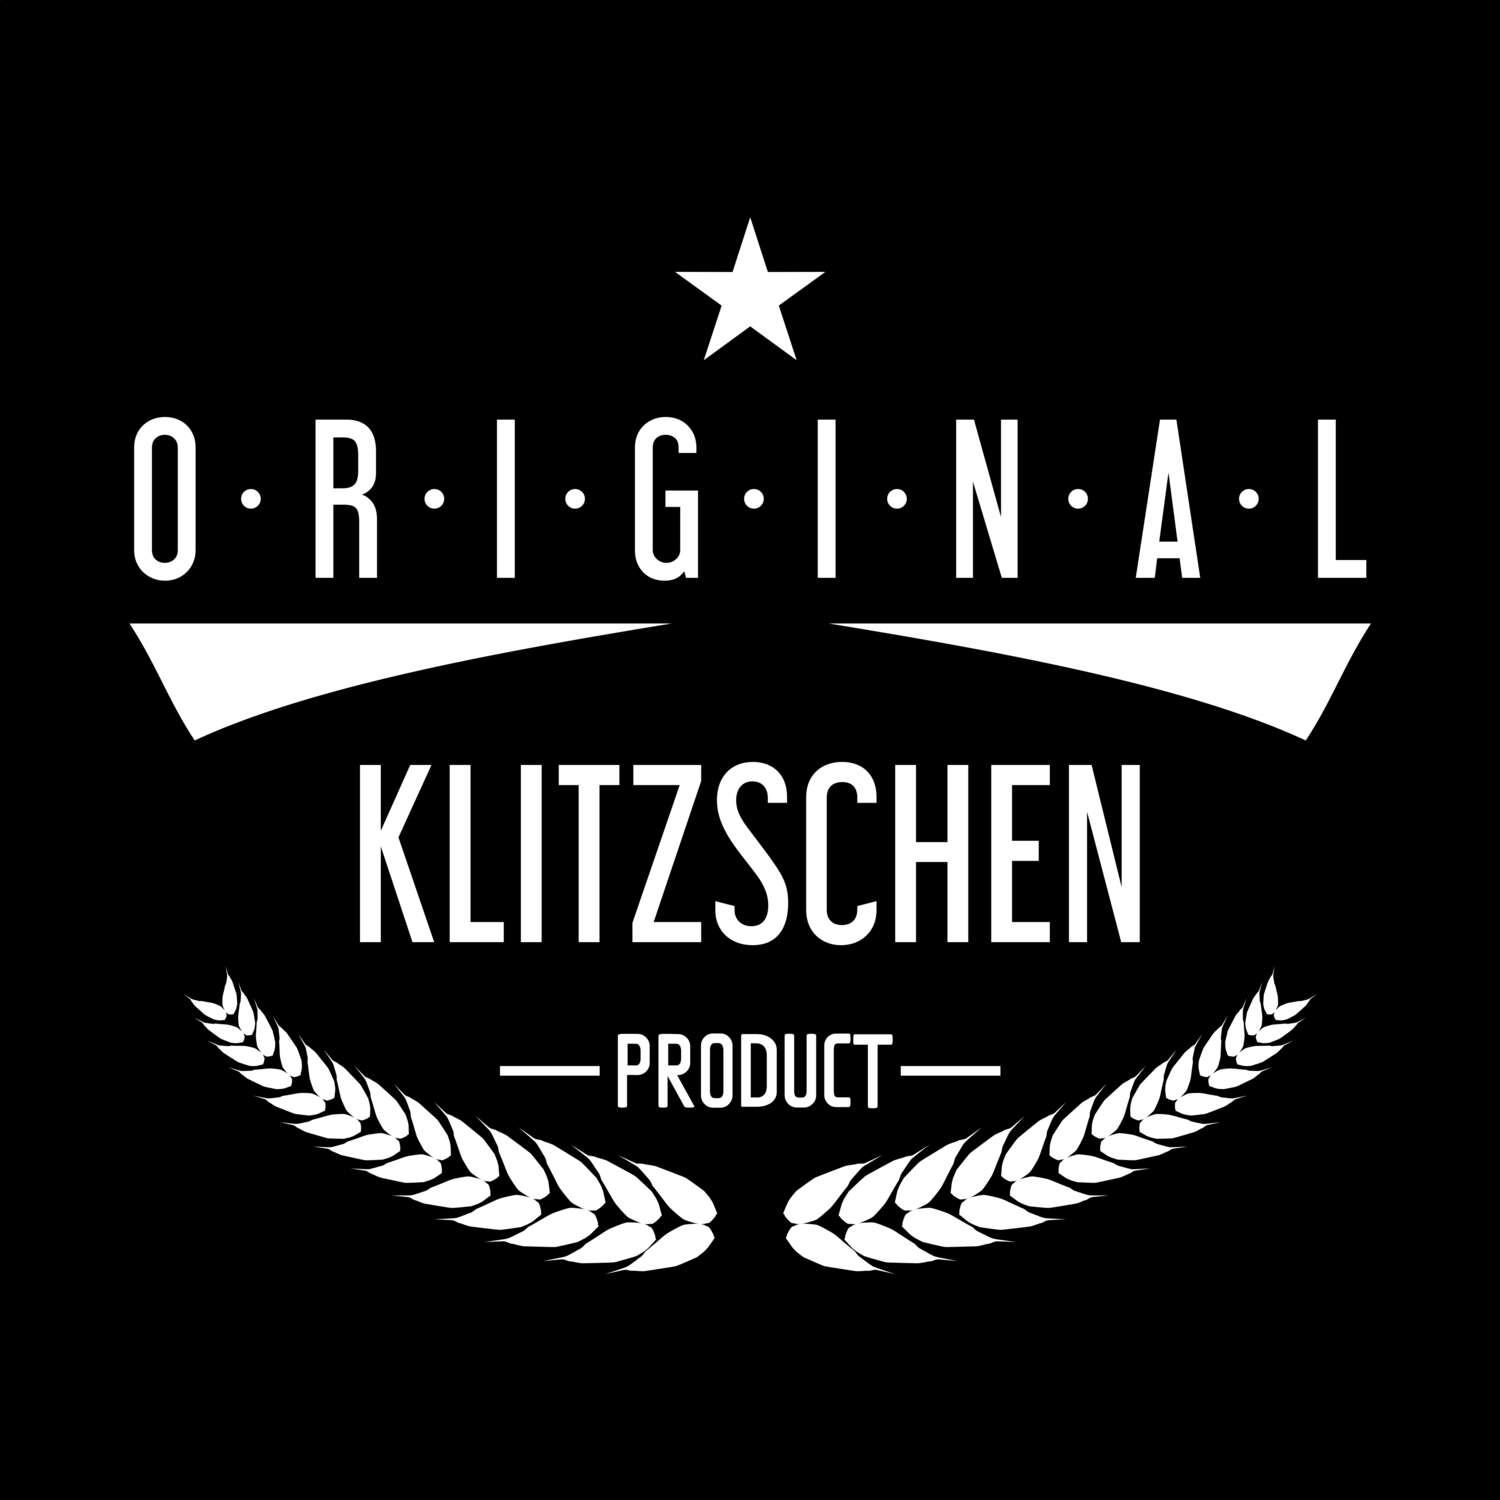 Klitzschen T-Shirt »Original Product«